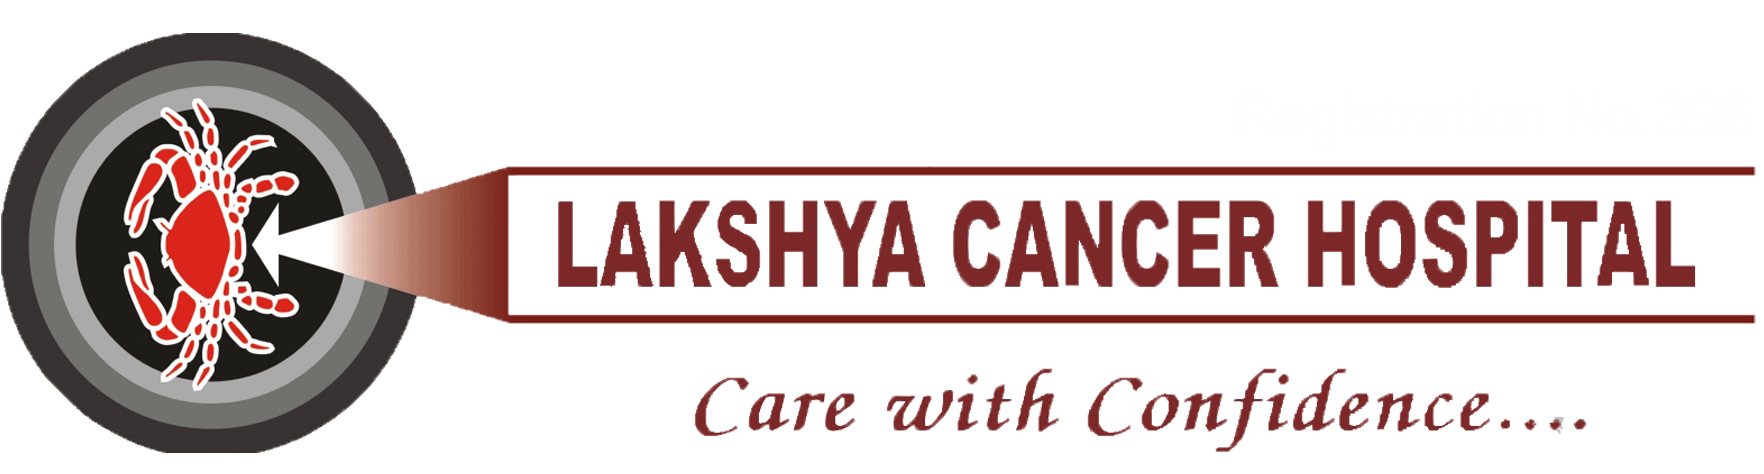 Lakshya Cancer Hospital